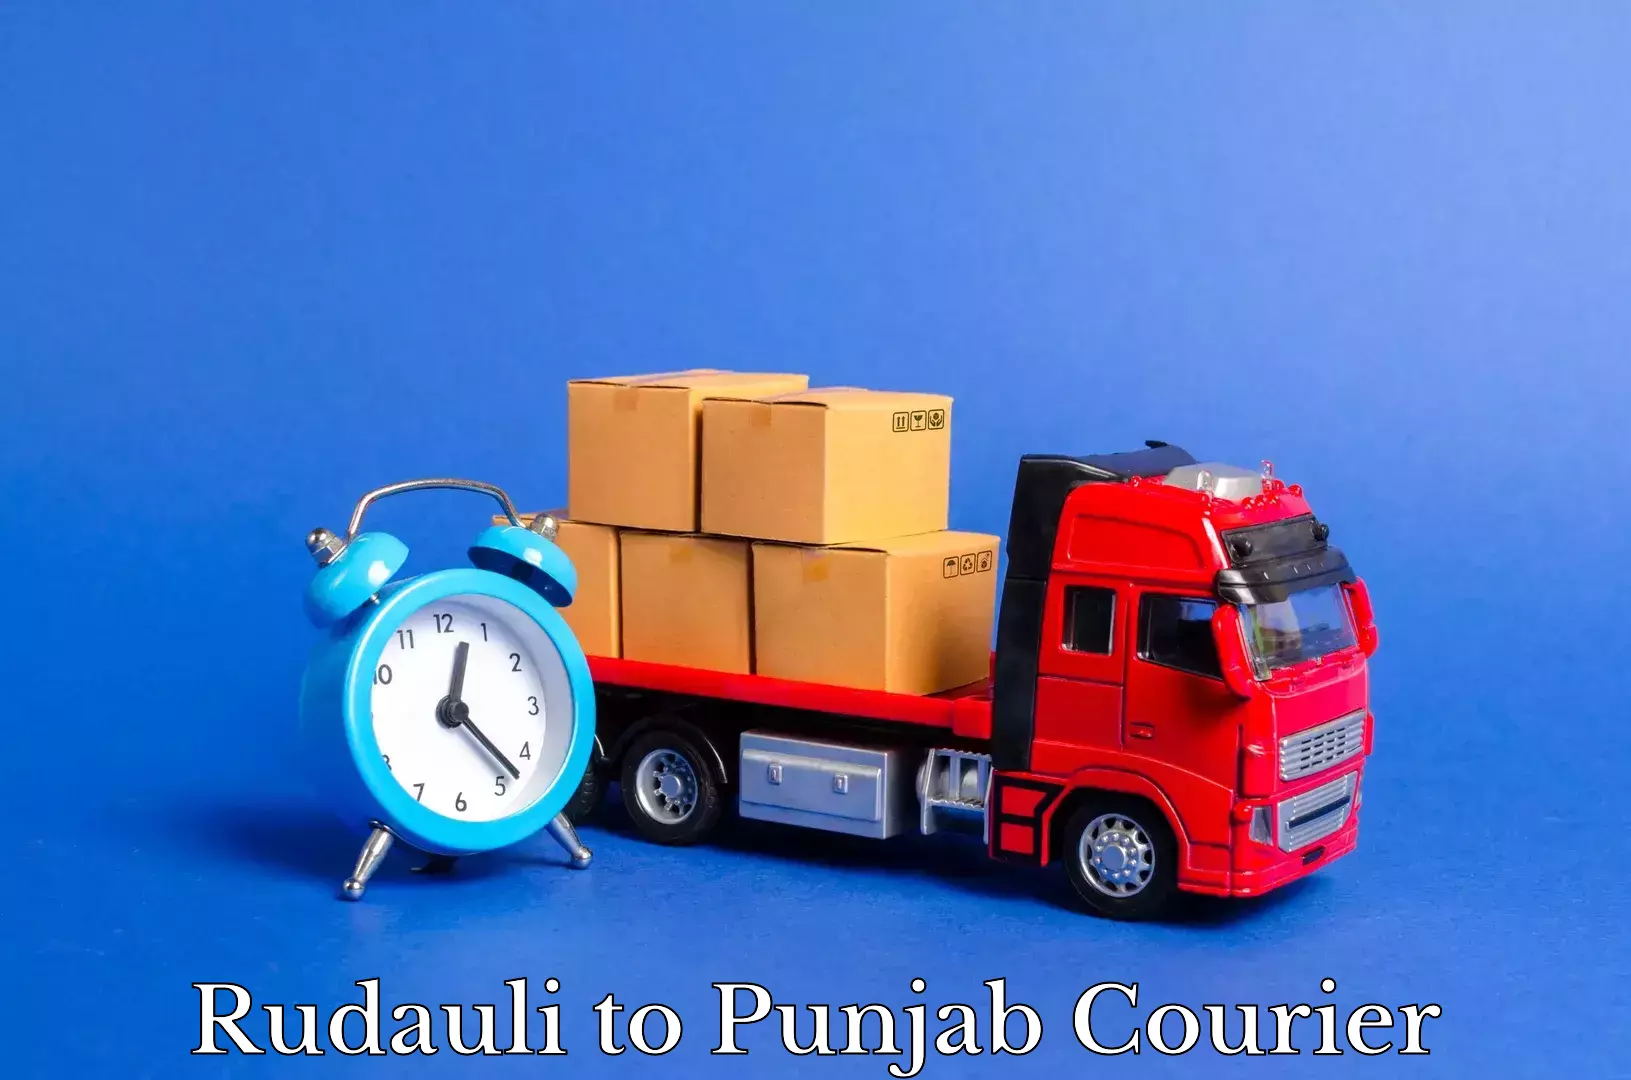 Furniture moving service Rudauli to Punjab